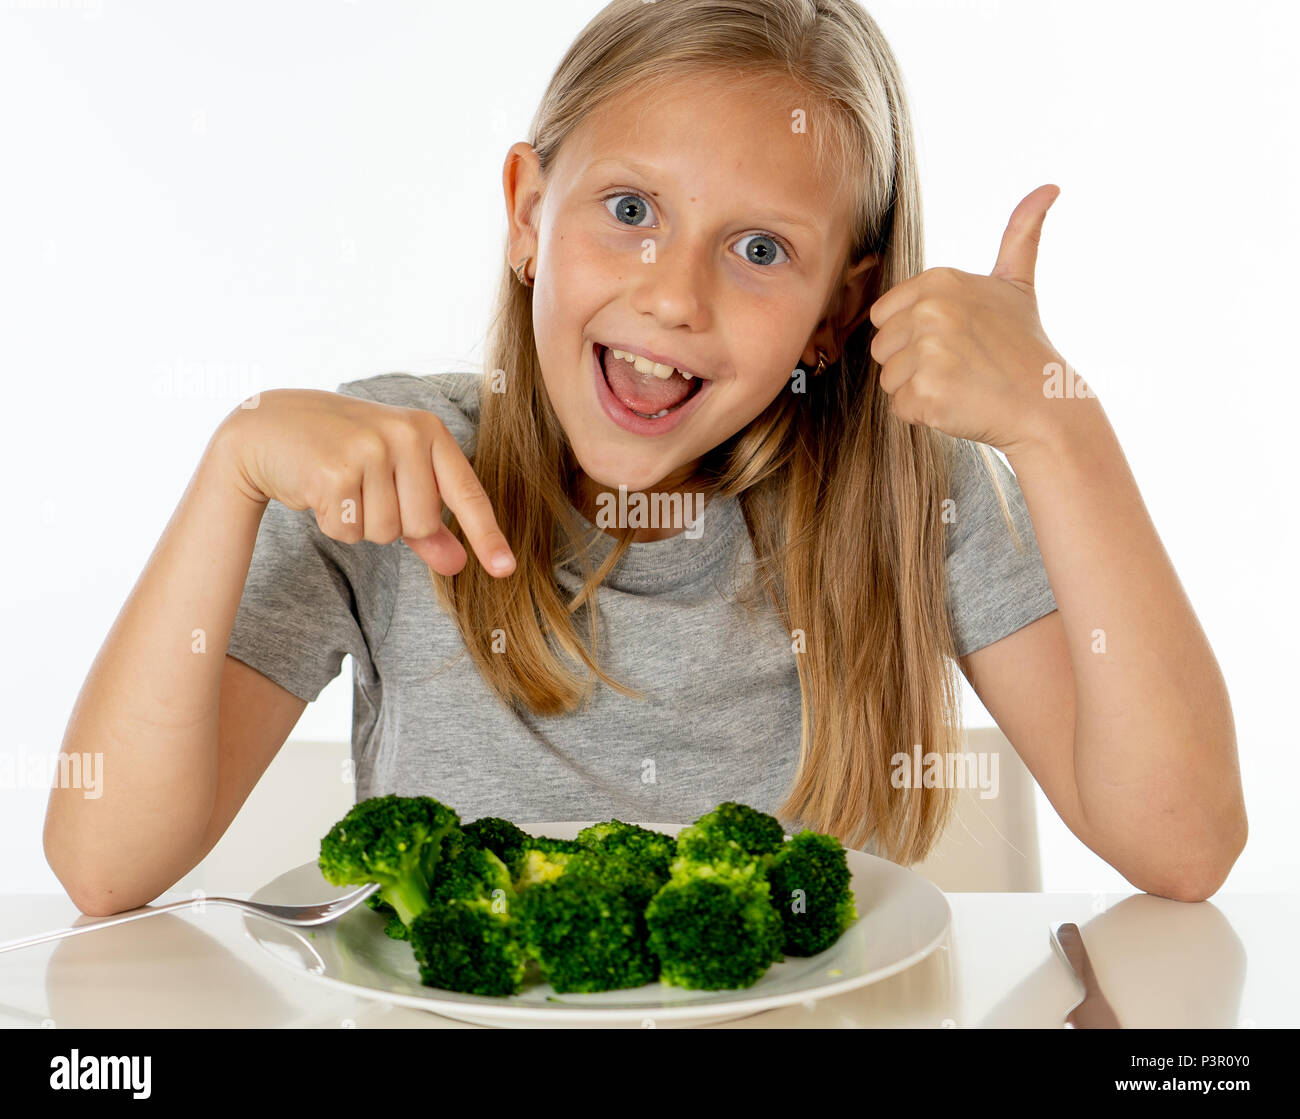 Jeune fille blonde with Thumbs Up à les apprécier et aimer manger son légumes brocoli sur une plaque avec couteau et fourchette dans les enfants en bonne santé de manger co Banque D'Images